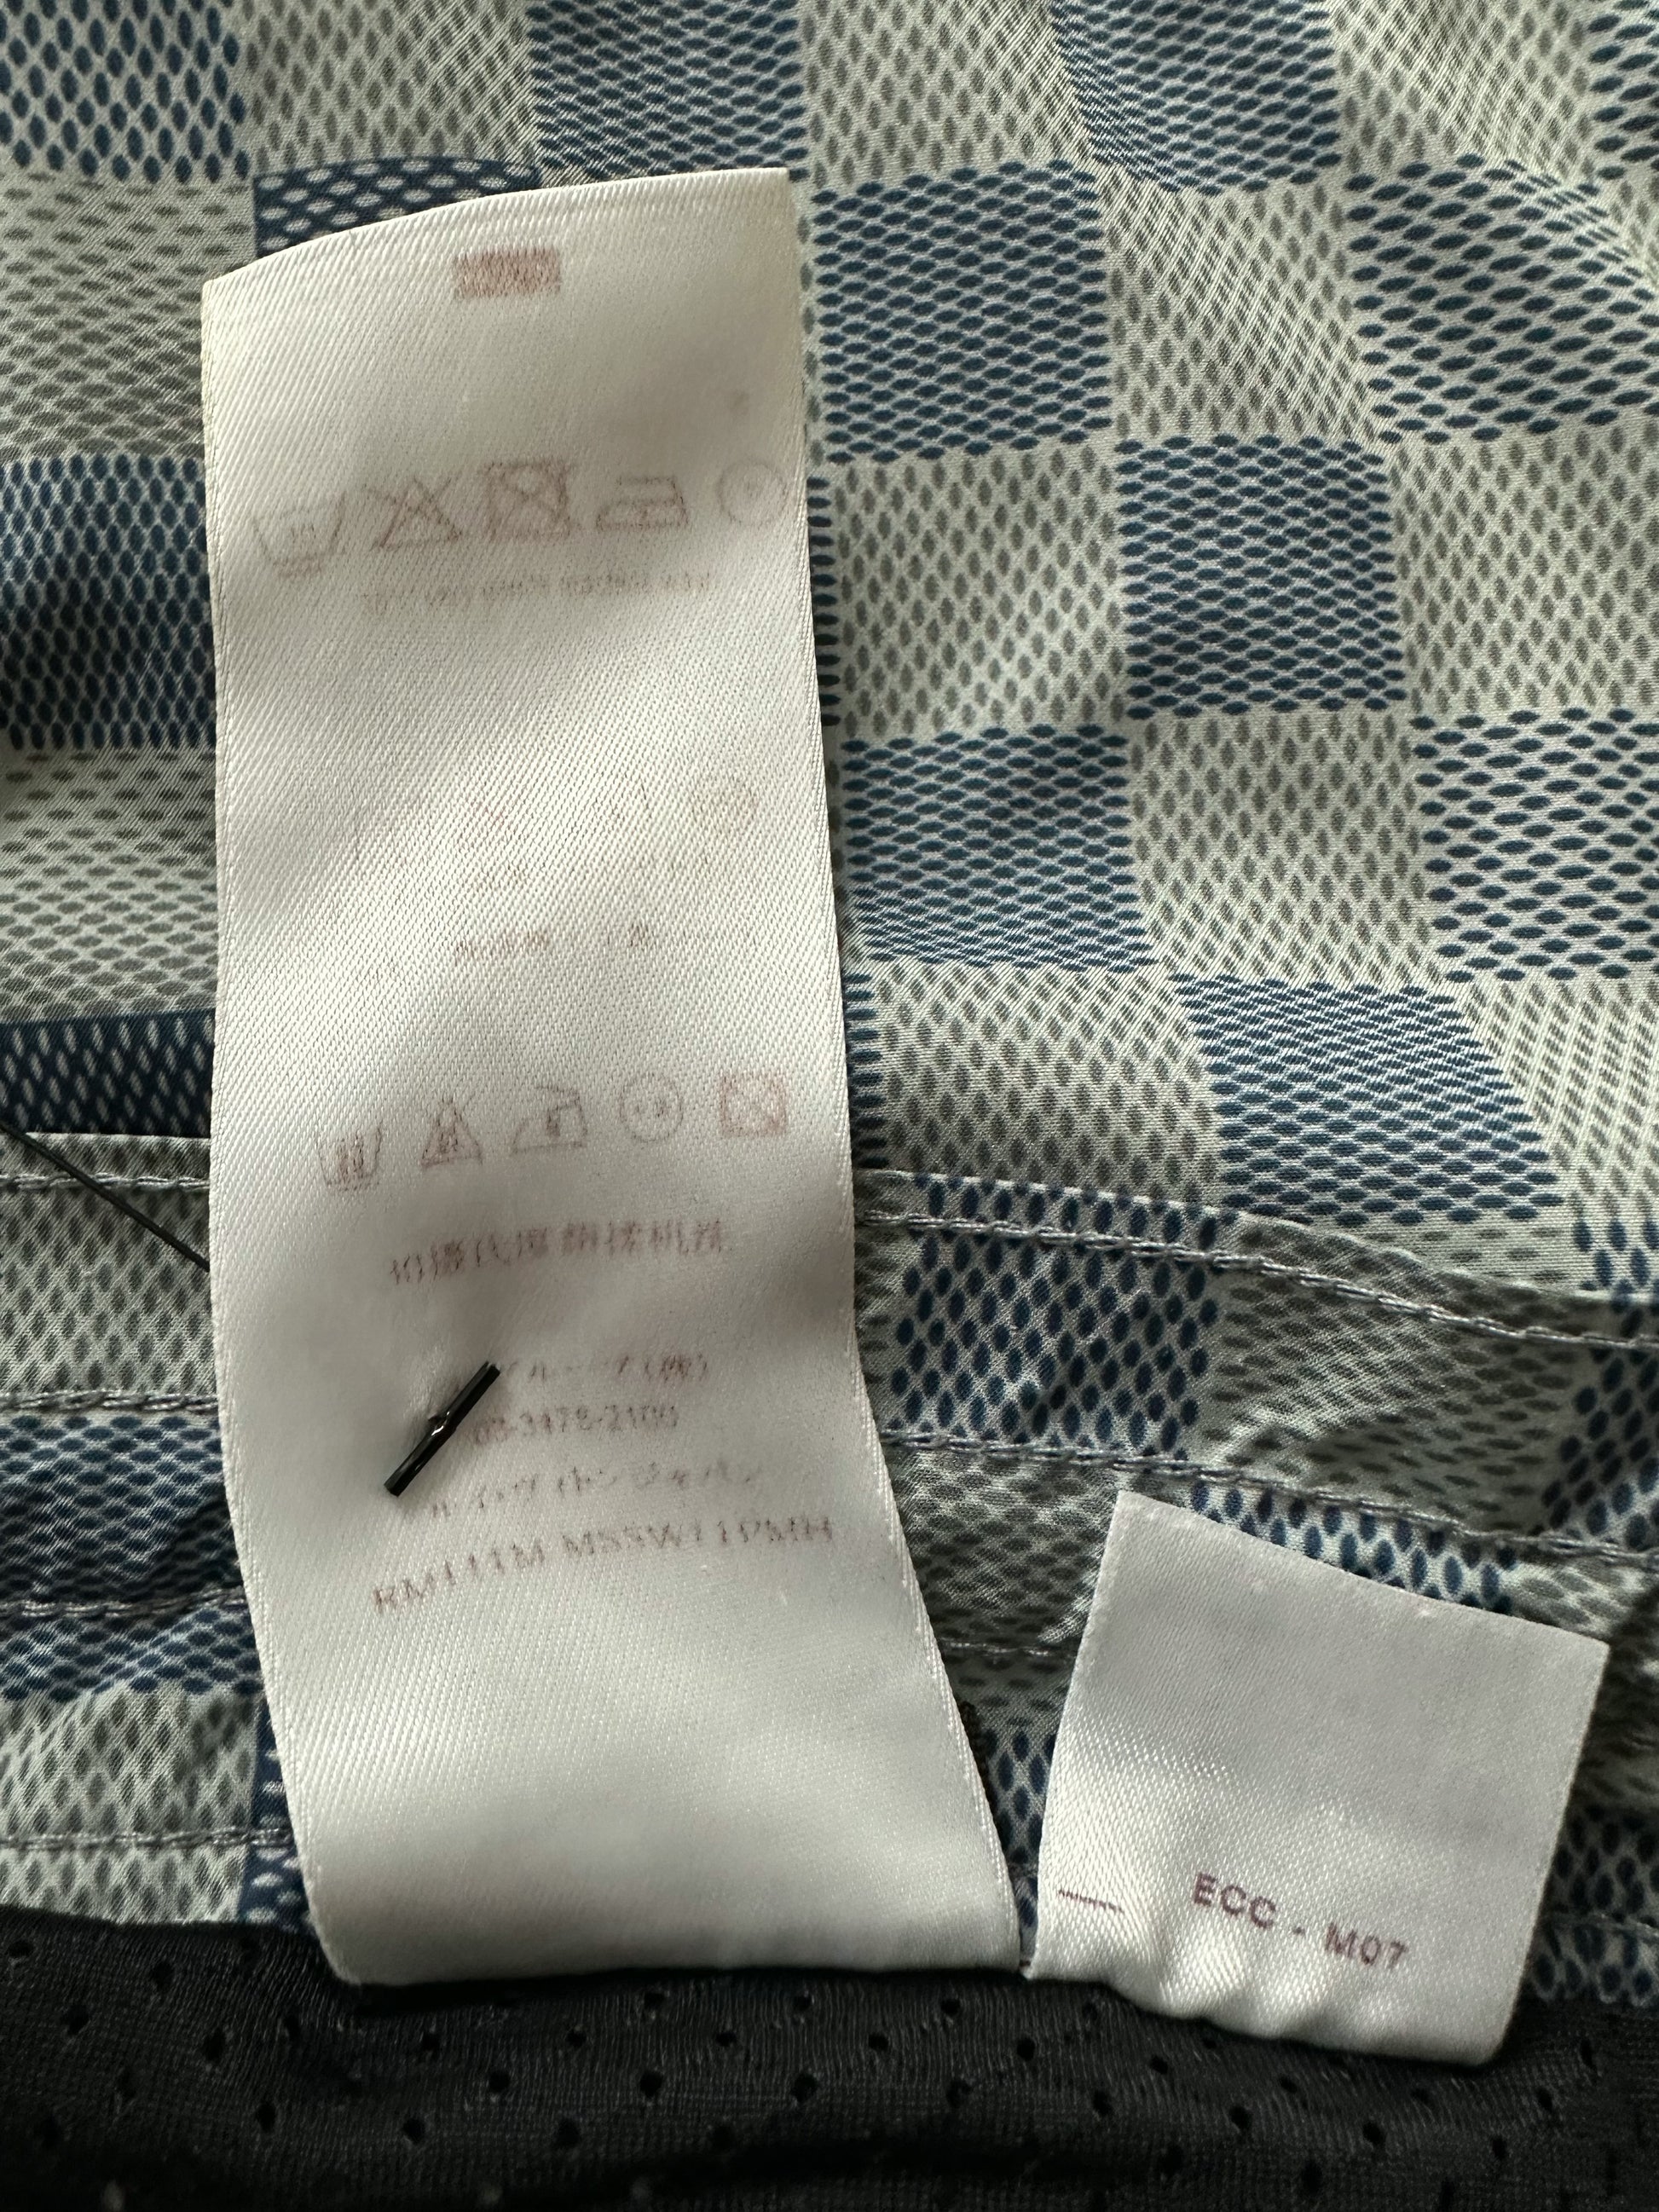 Louis Vuitton Damier Jacquard Shorts Grey Mouse. Size M0